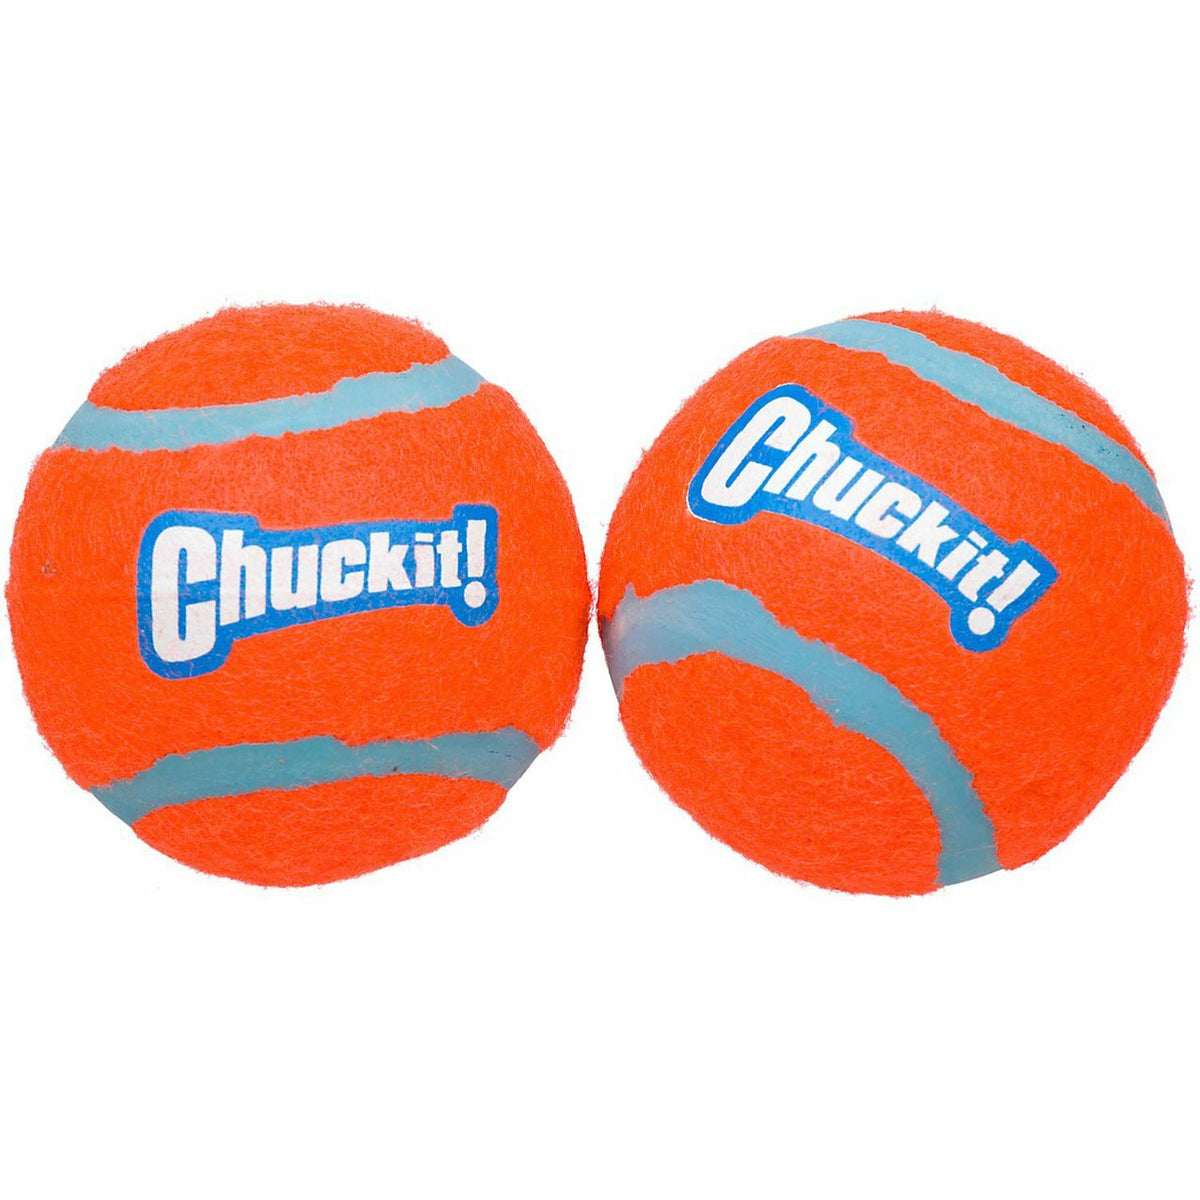 Chuck It Tennis Ball 2 Pack Shrink